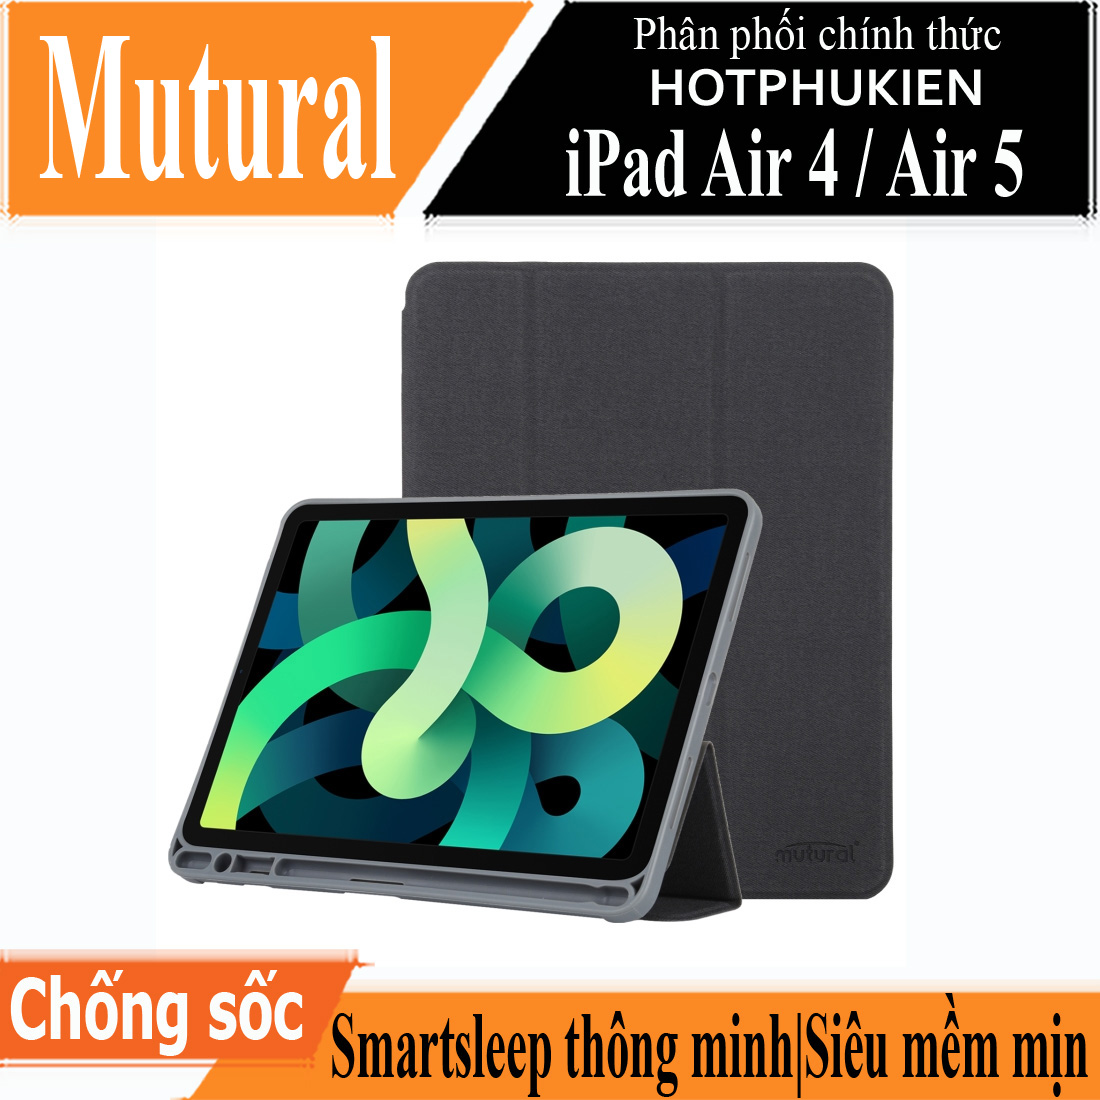 Case bao da chống sốc canvas cho iPad Air 4 / Air 5 M1 10.9 inch hiệu Mutural Yashi Series trang bị ngăn đựng bút, thiết kế tản nhiệt, hỗ trợ smartsleep - hàng nhập khẩu